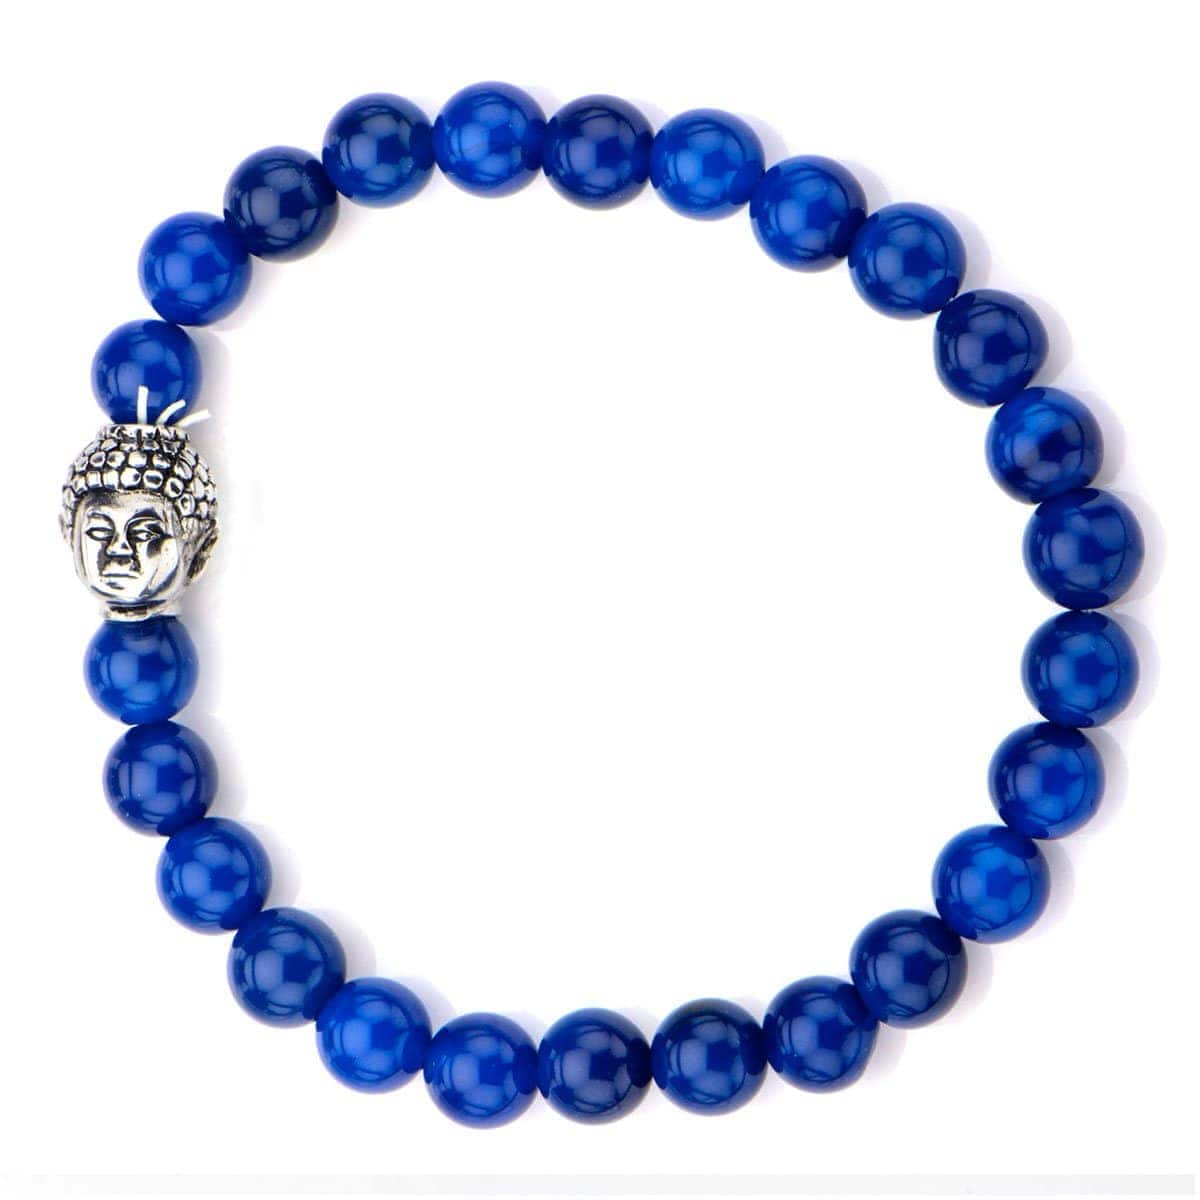 INOX JEWELRY Bracelets Silver Tone Stainless Steel Buddha on Blue Lapis Bead Stretch Bracelet BR5150